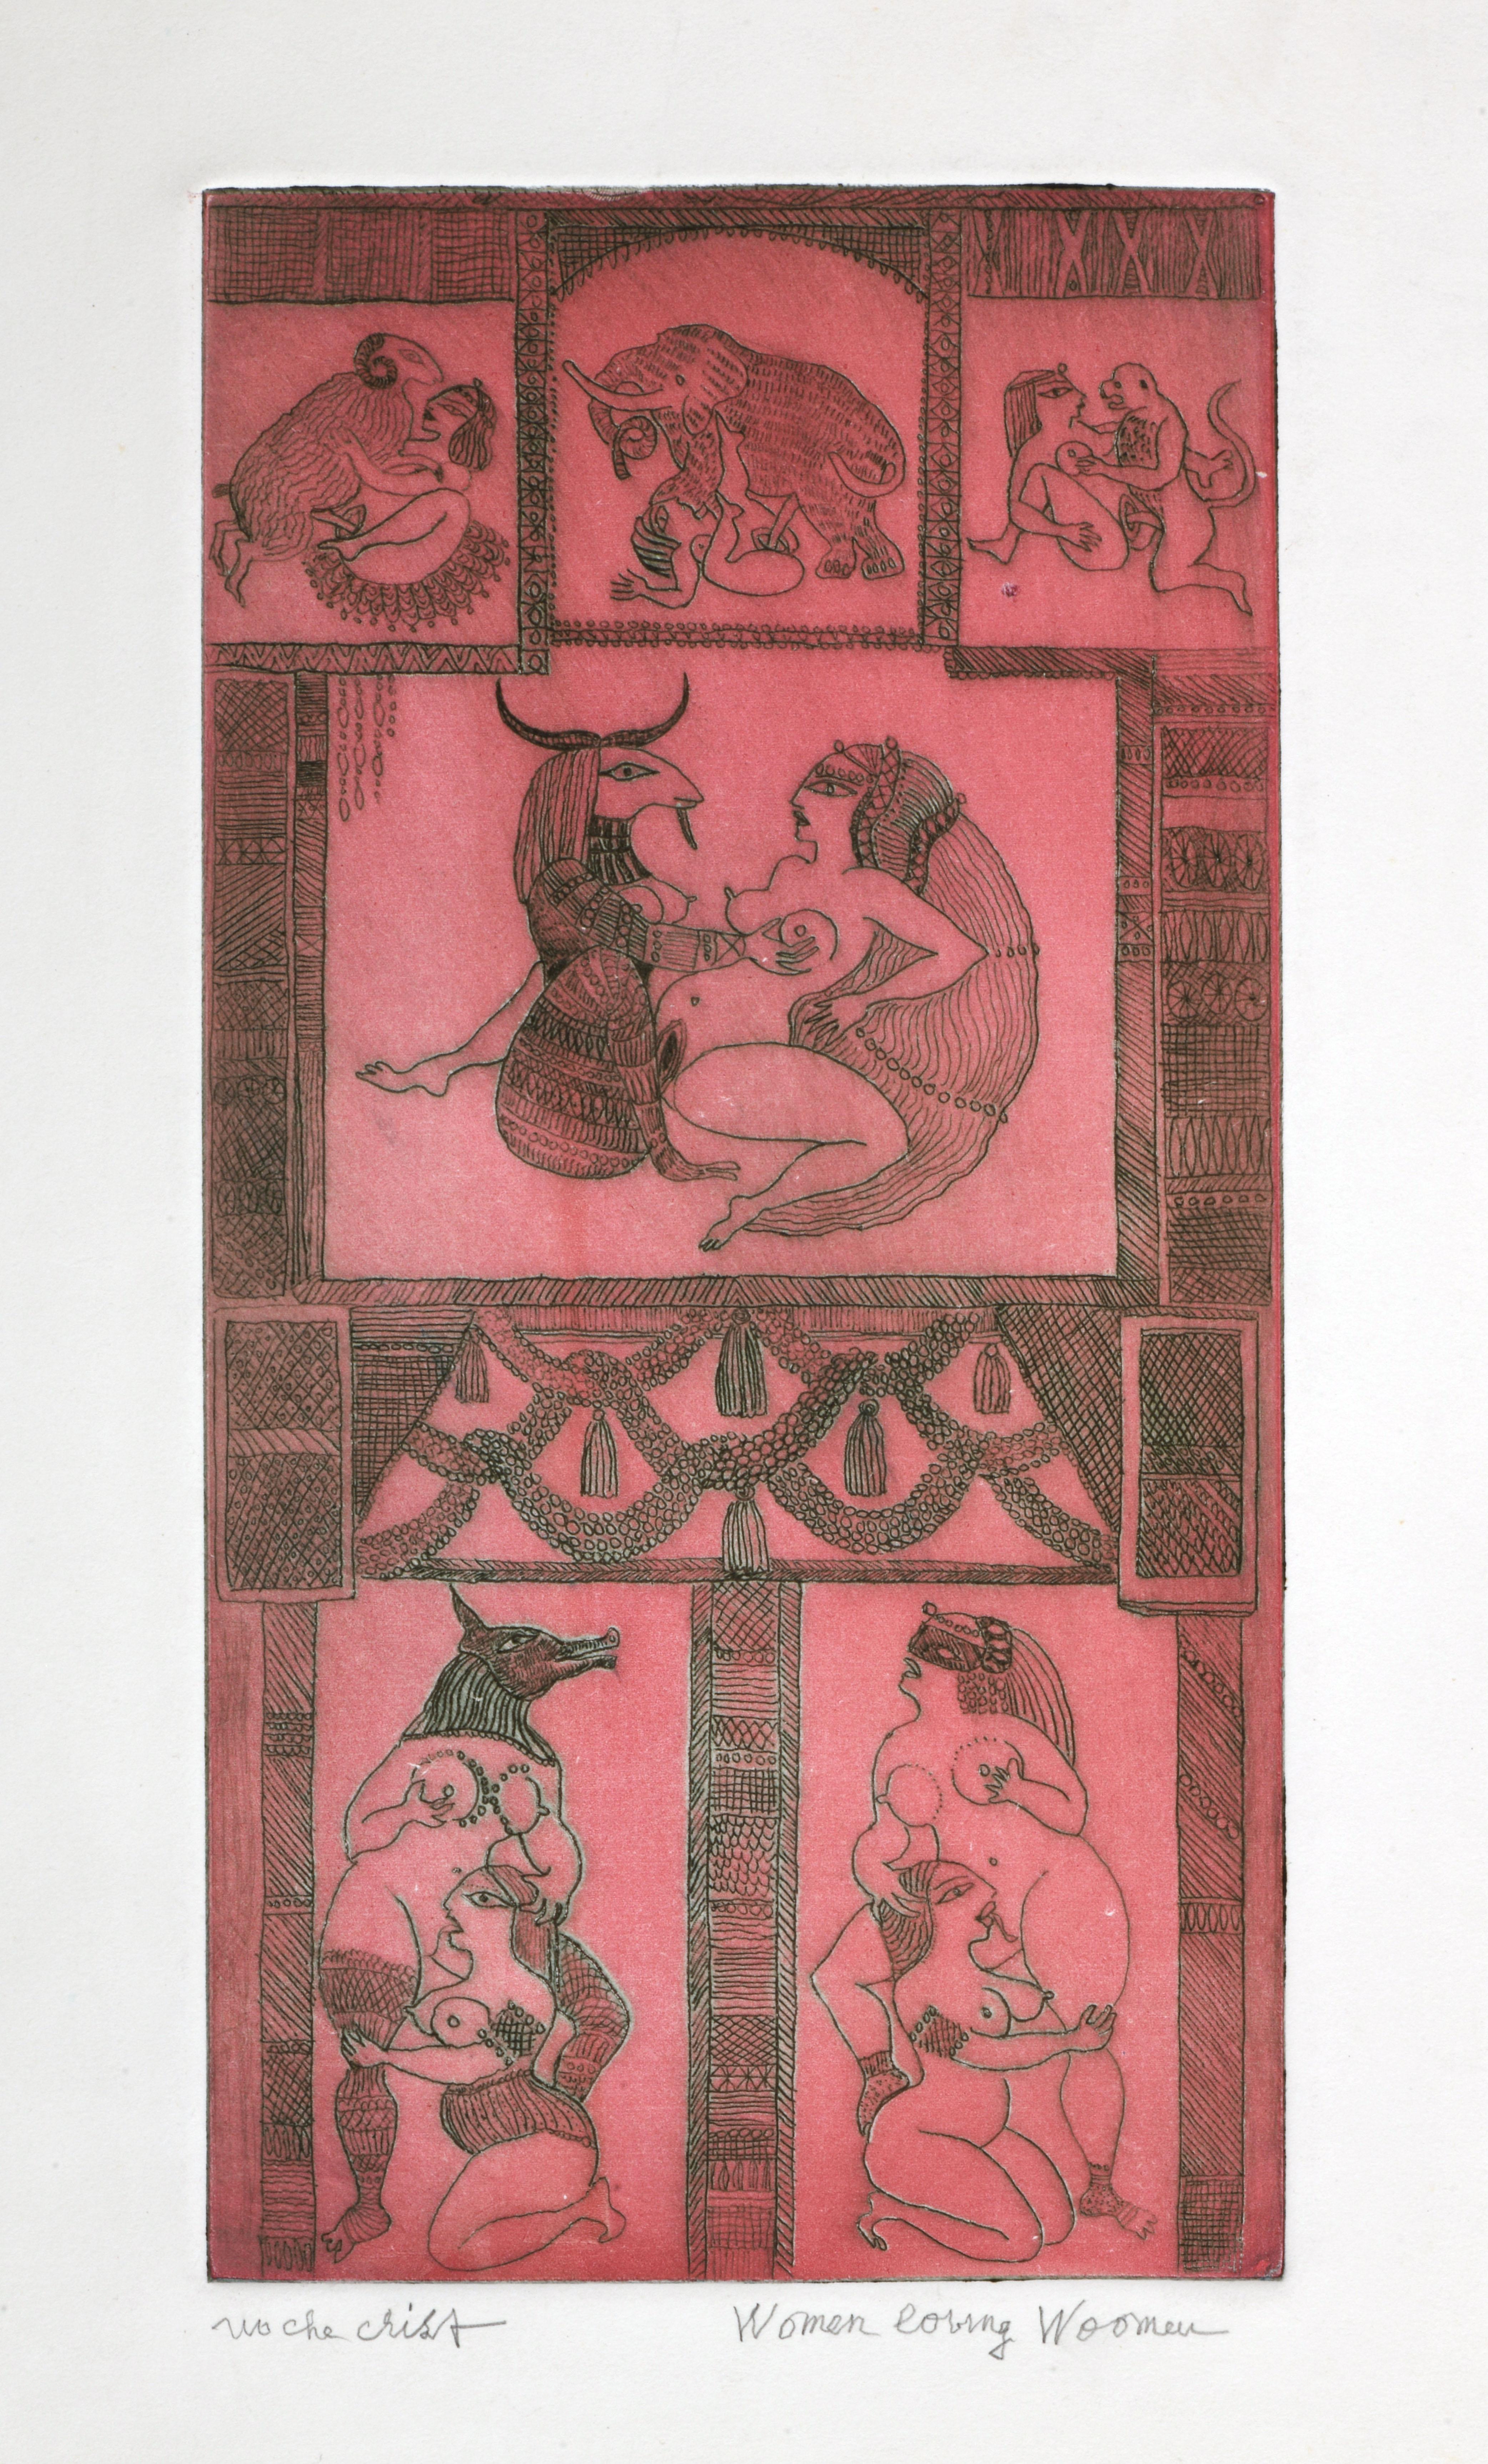 Women Loving Woomen - Print by Noche Crist